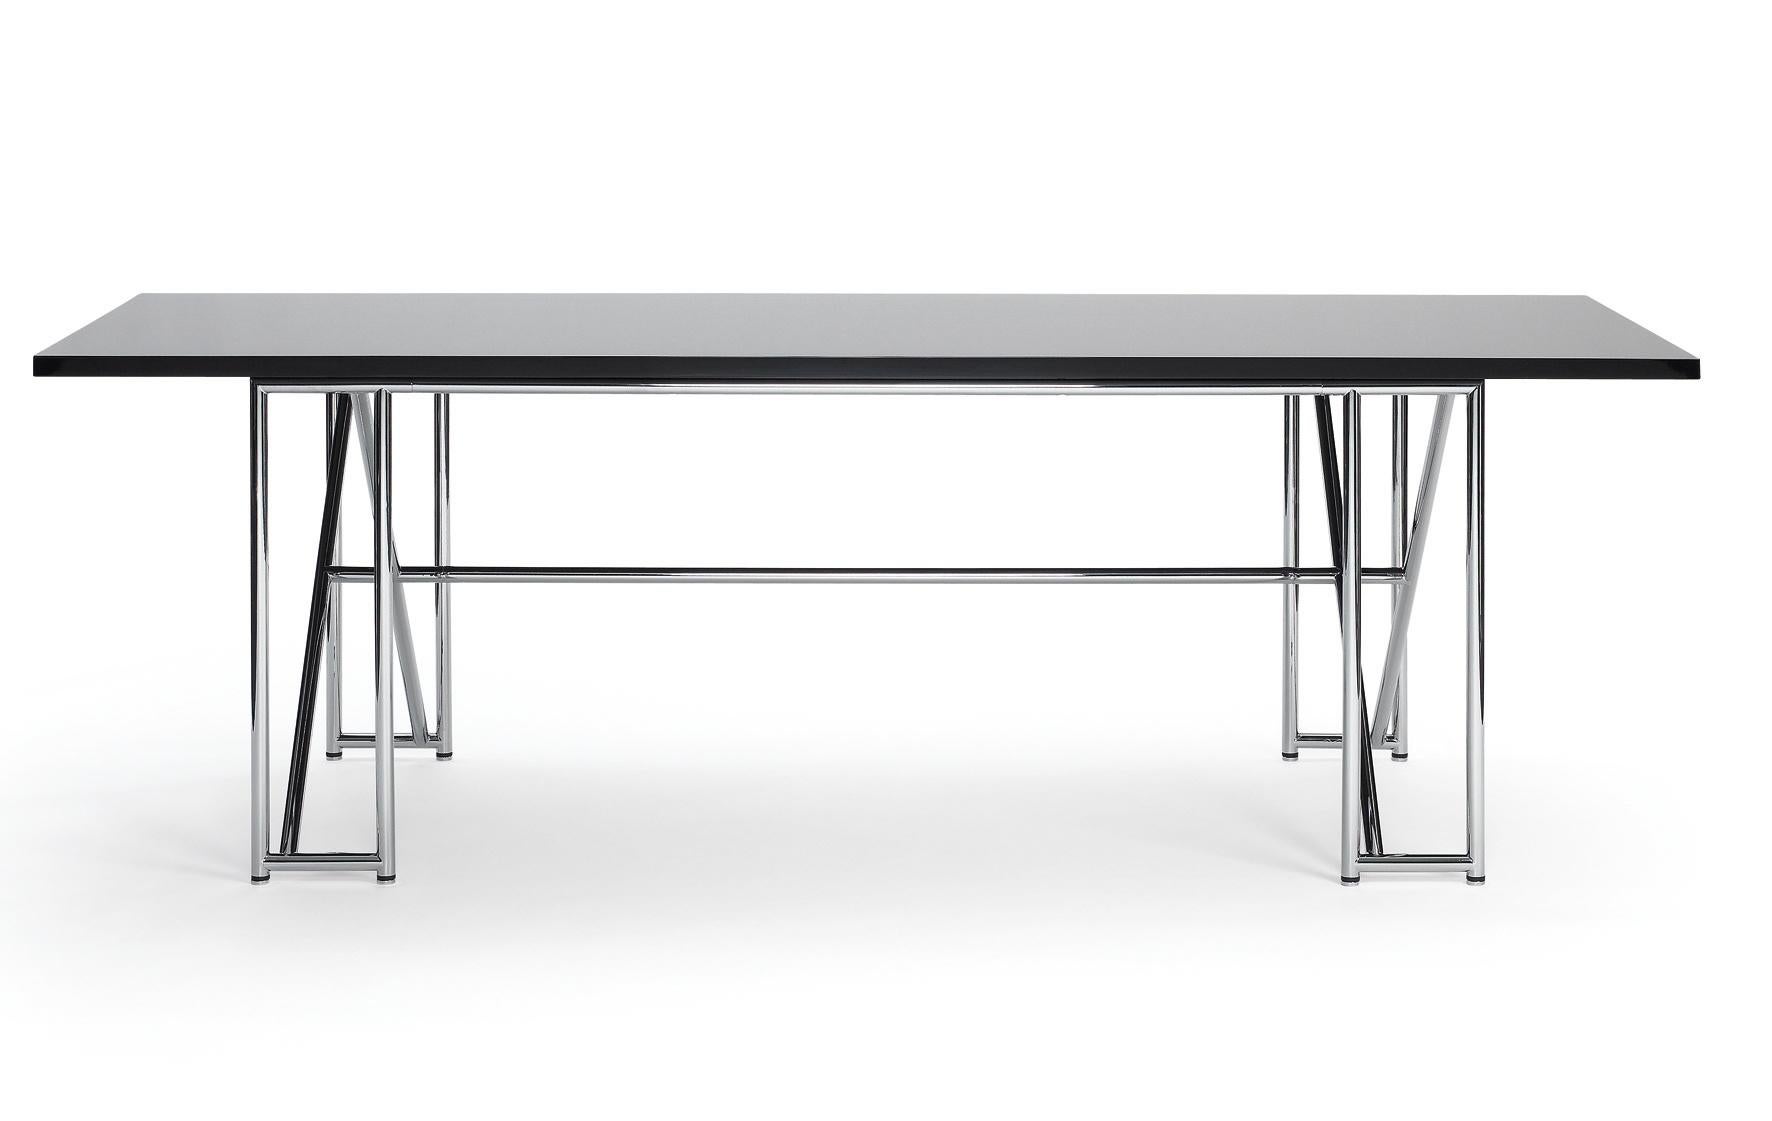 La table double X est le résultat de la rencontre d'un Design/One en tubes d'acier d'avant-garde et d'une table de réfectoire classique. Une table large mais élégante, dont les supports en forme de X assurent une rigidité optimale. Comme tant